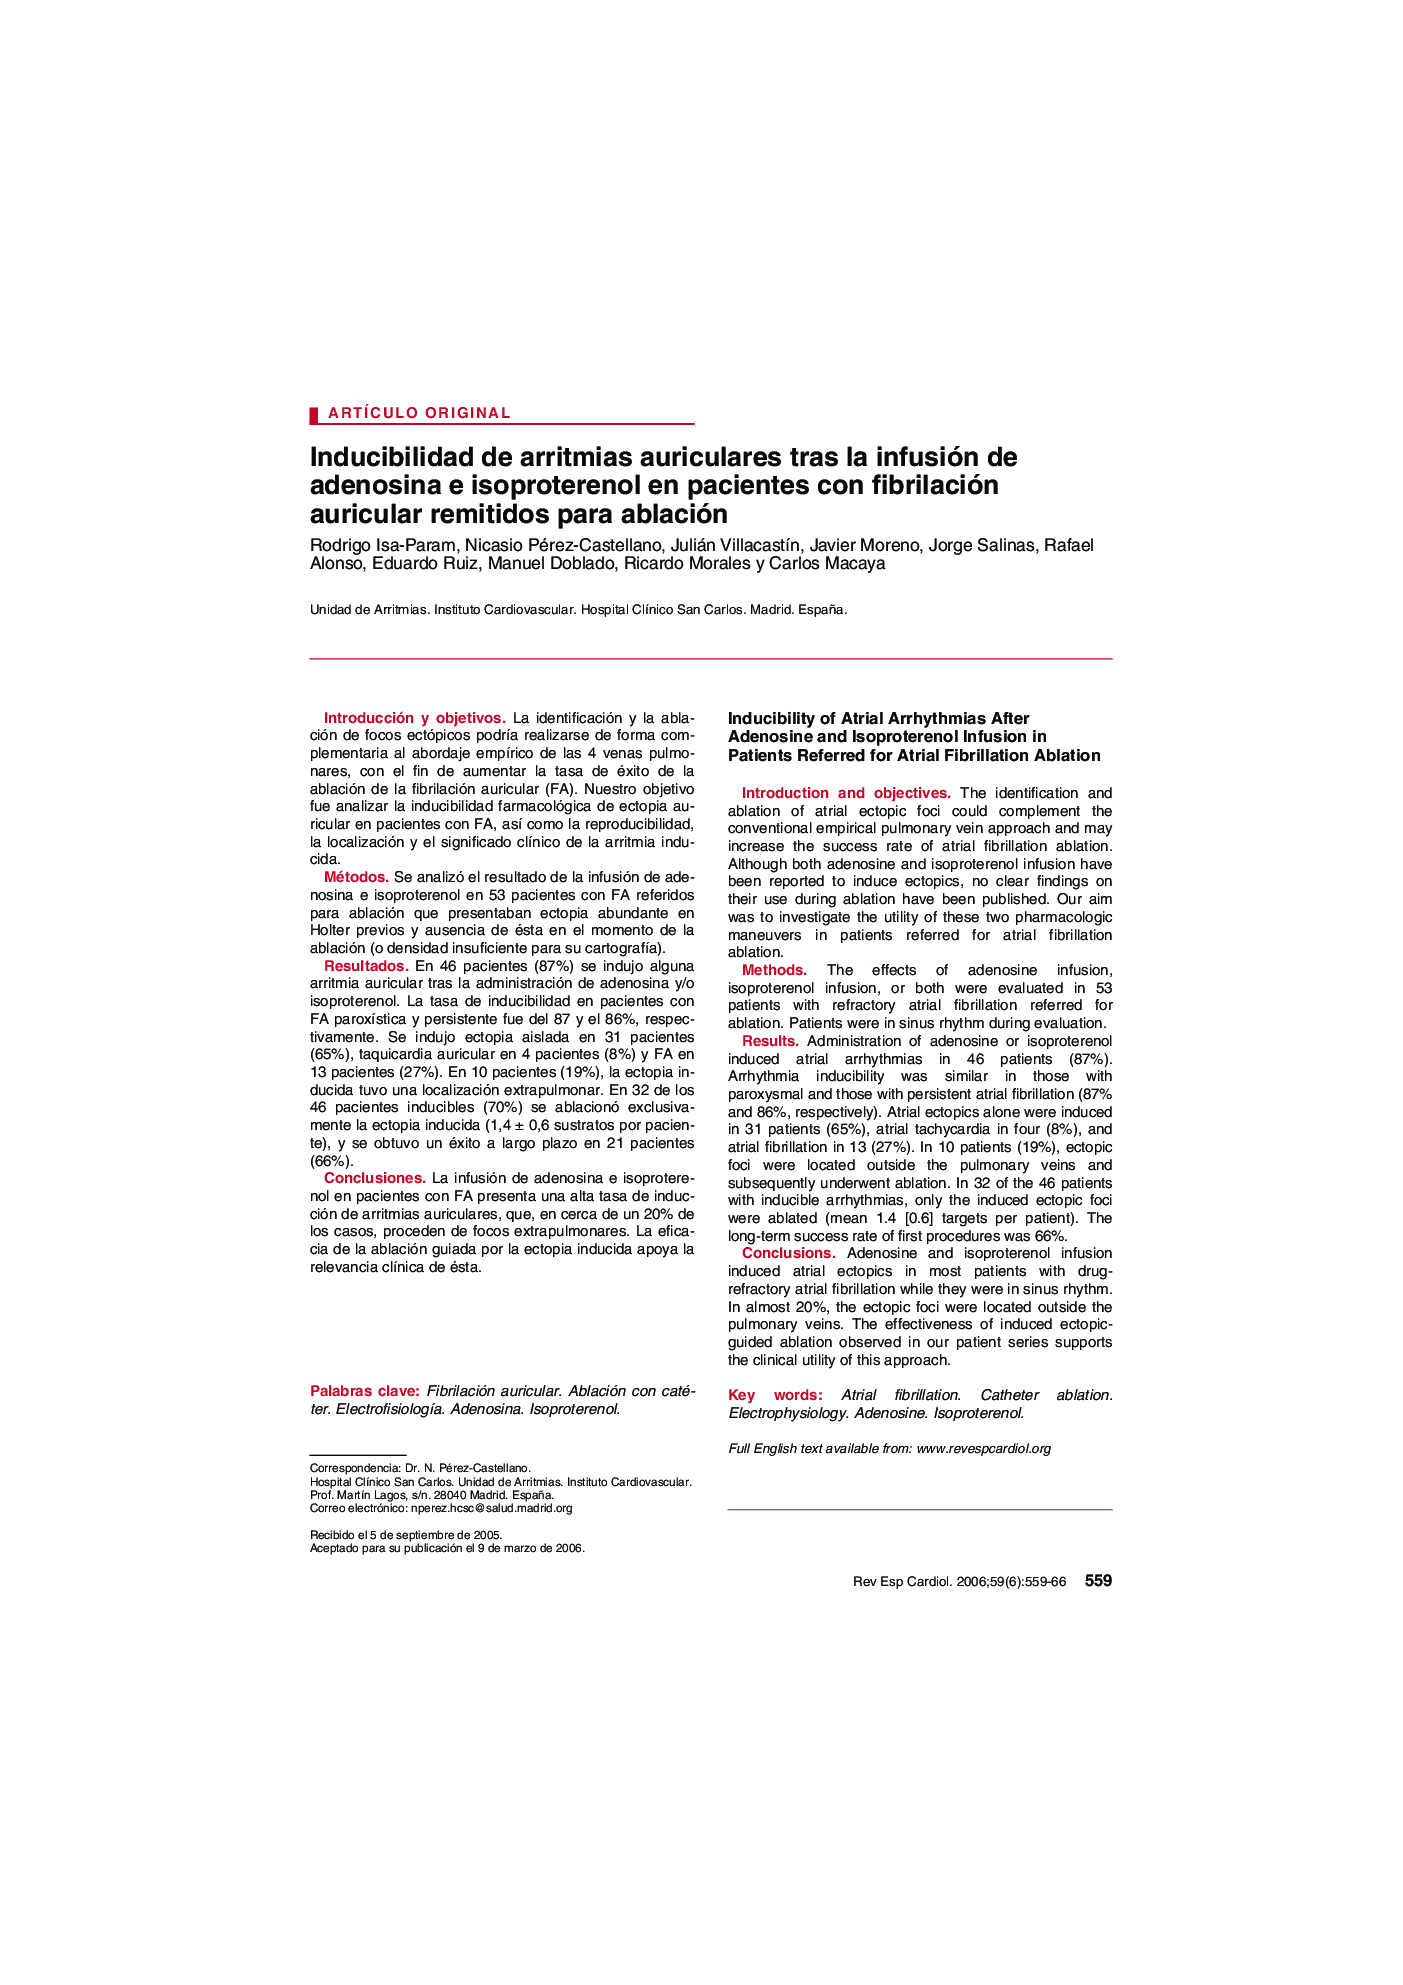 Inducibilidad de arritmias auriculares tras la infusión de adenosina e isoproterenol en pacientes con fibrilación auricular remitidos para ablación